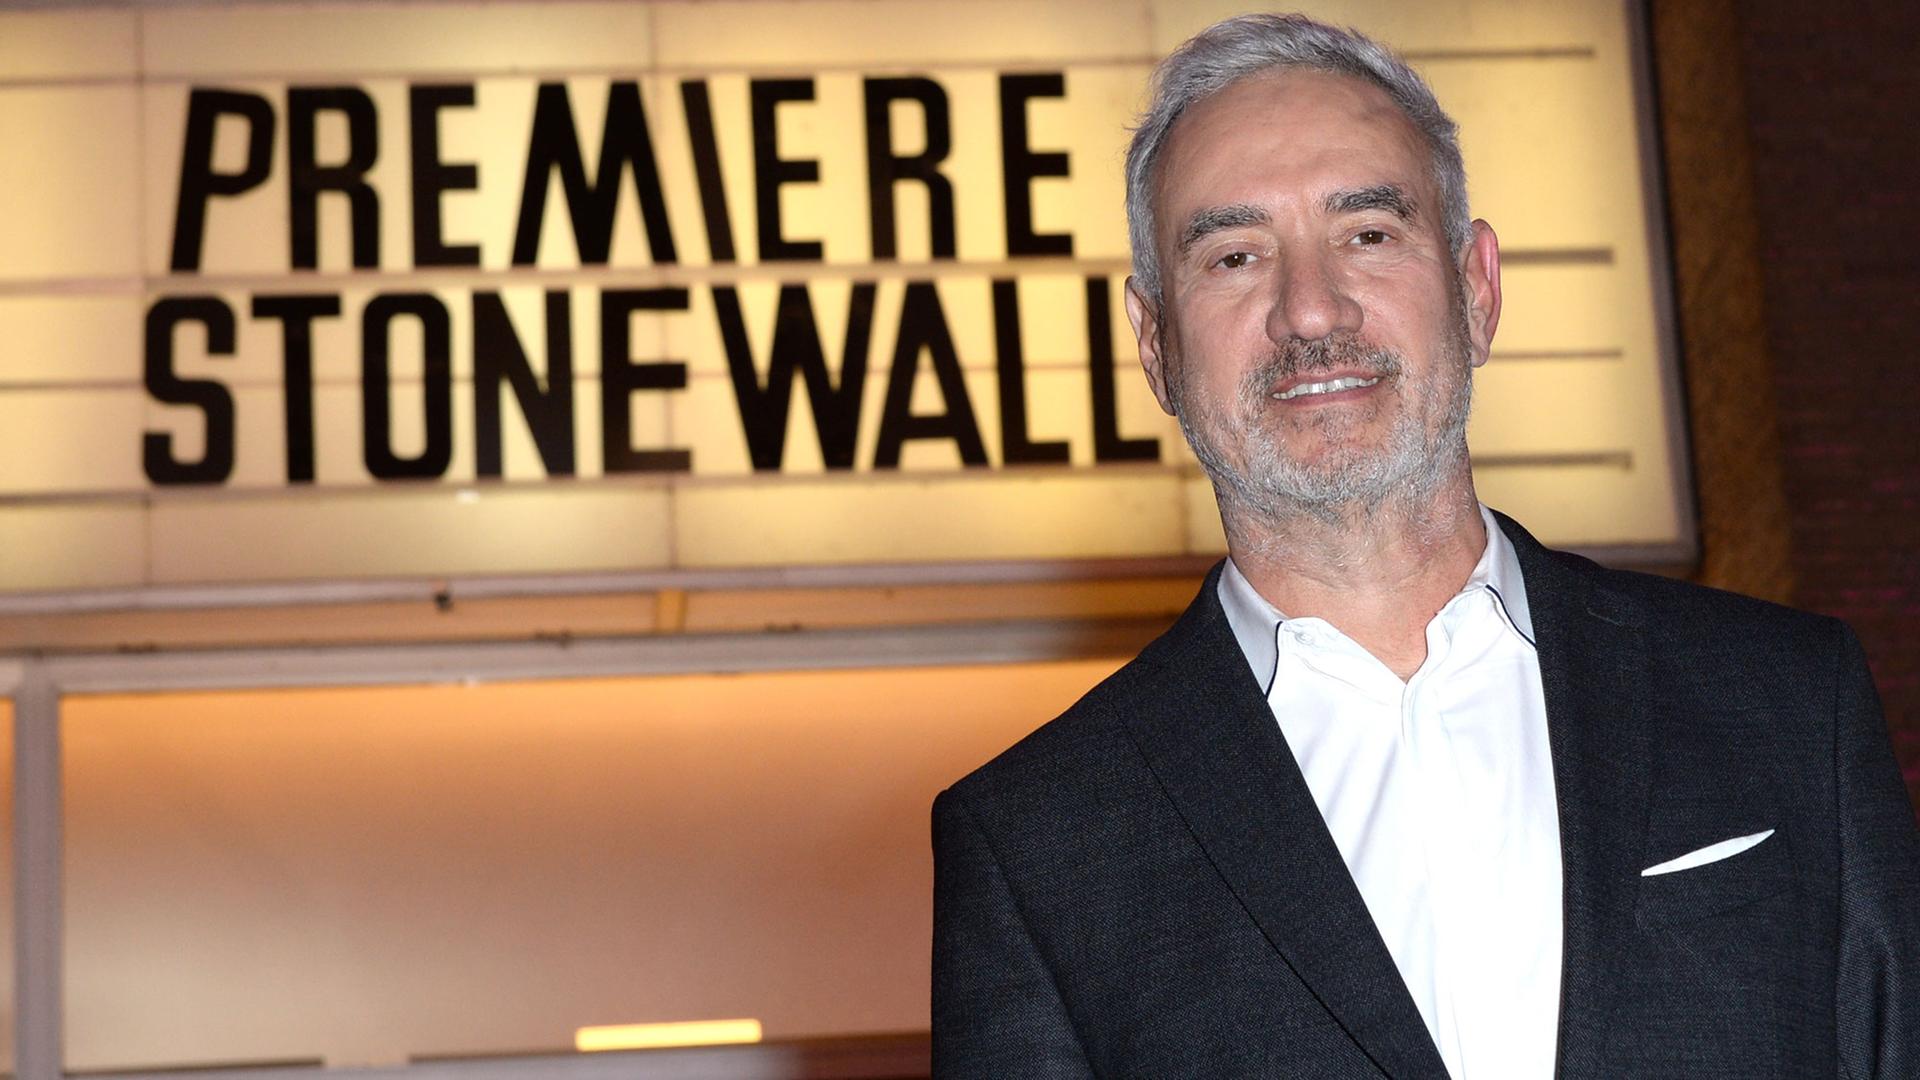 Regisseur Roland Emmerich vor der Kino-Leuchttafel mit der Aufschrift "Premiere Stonewall"